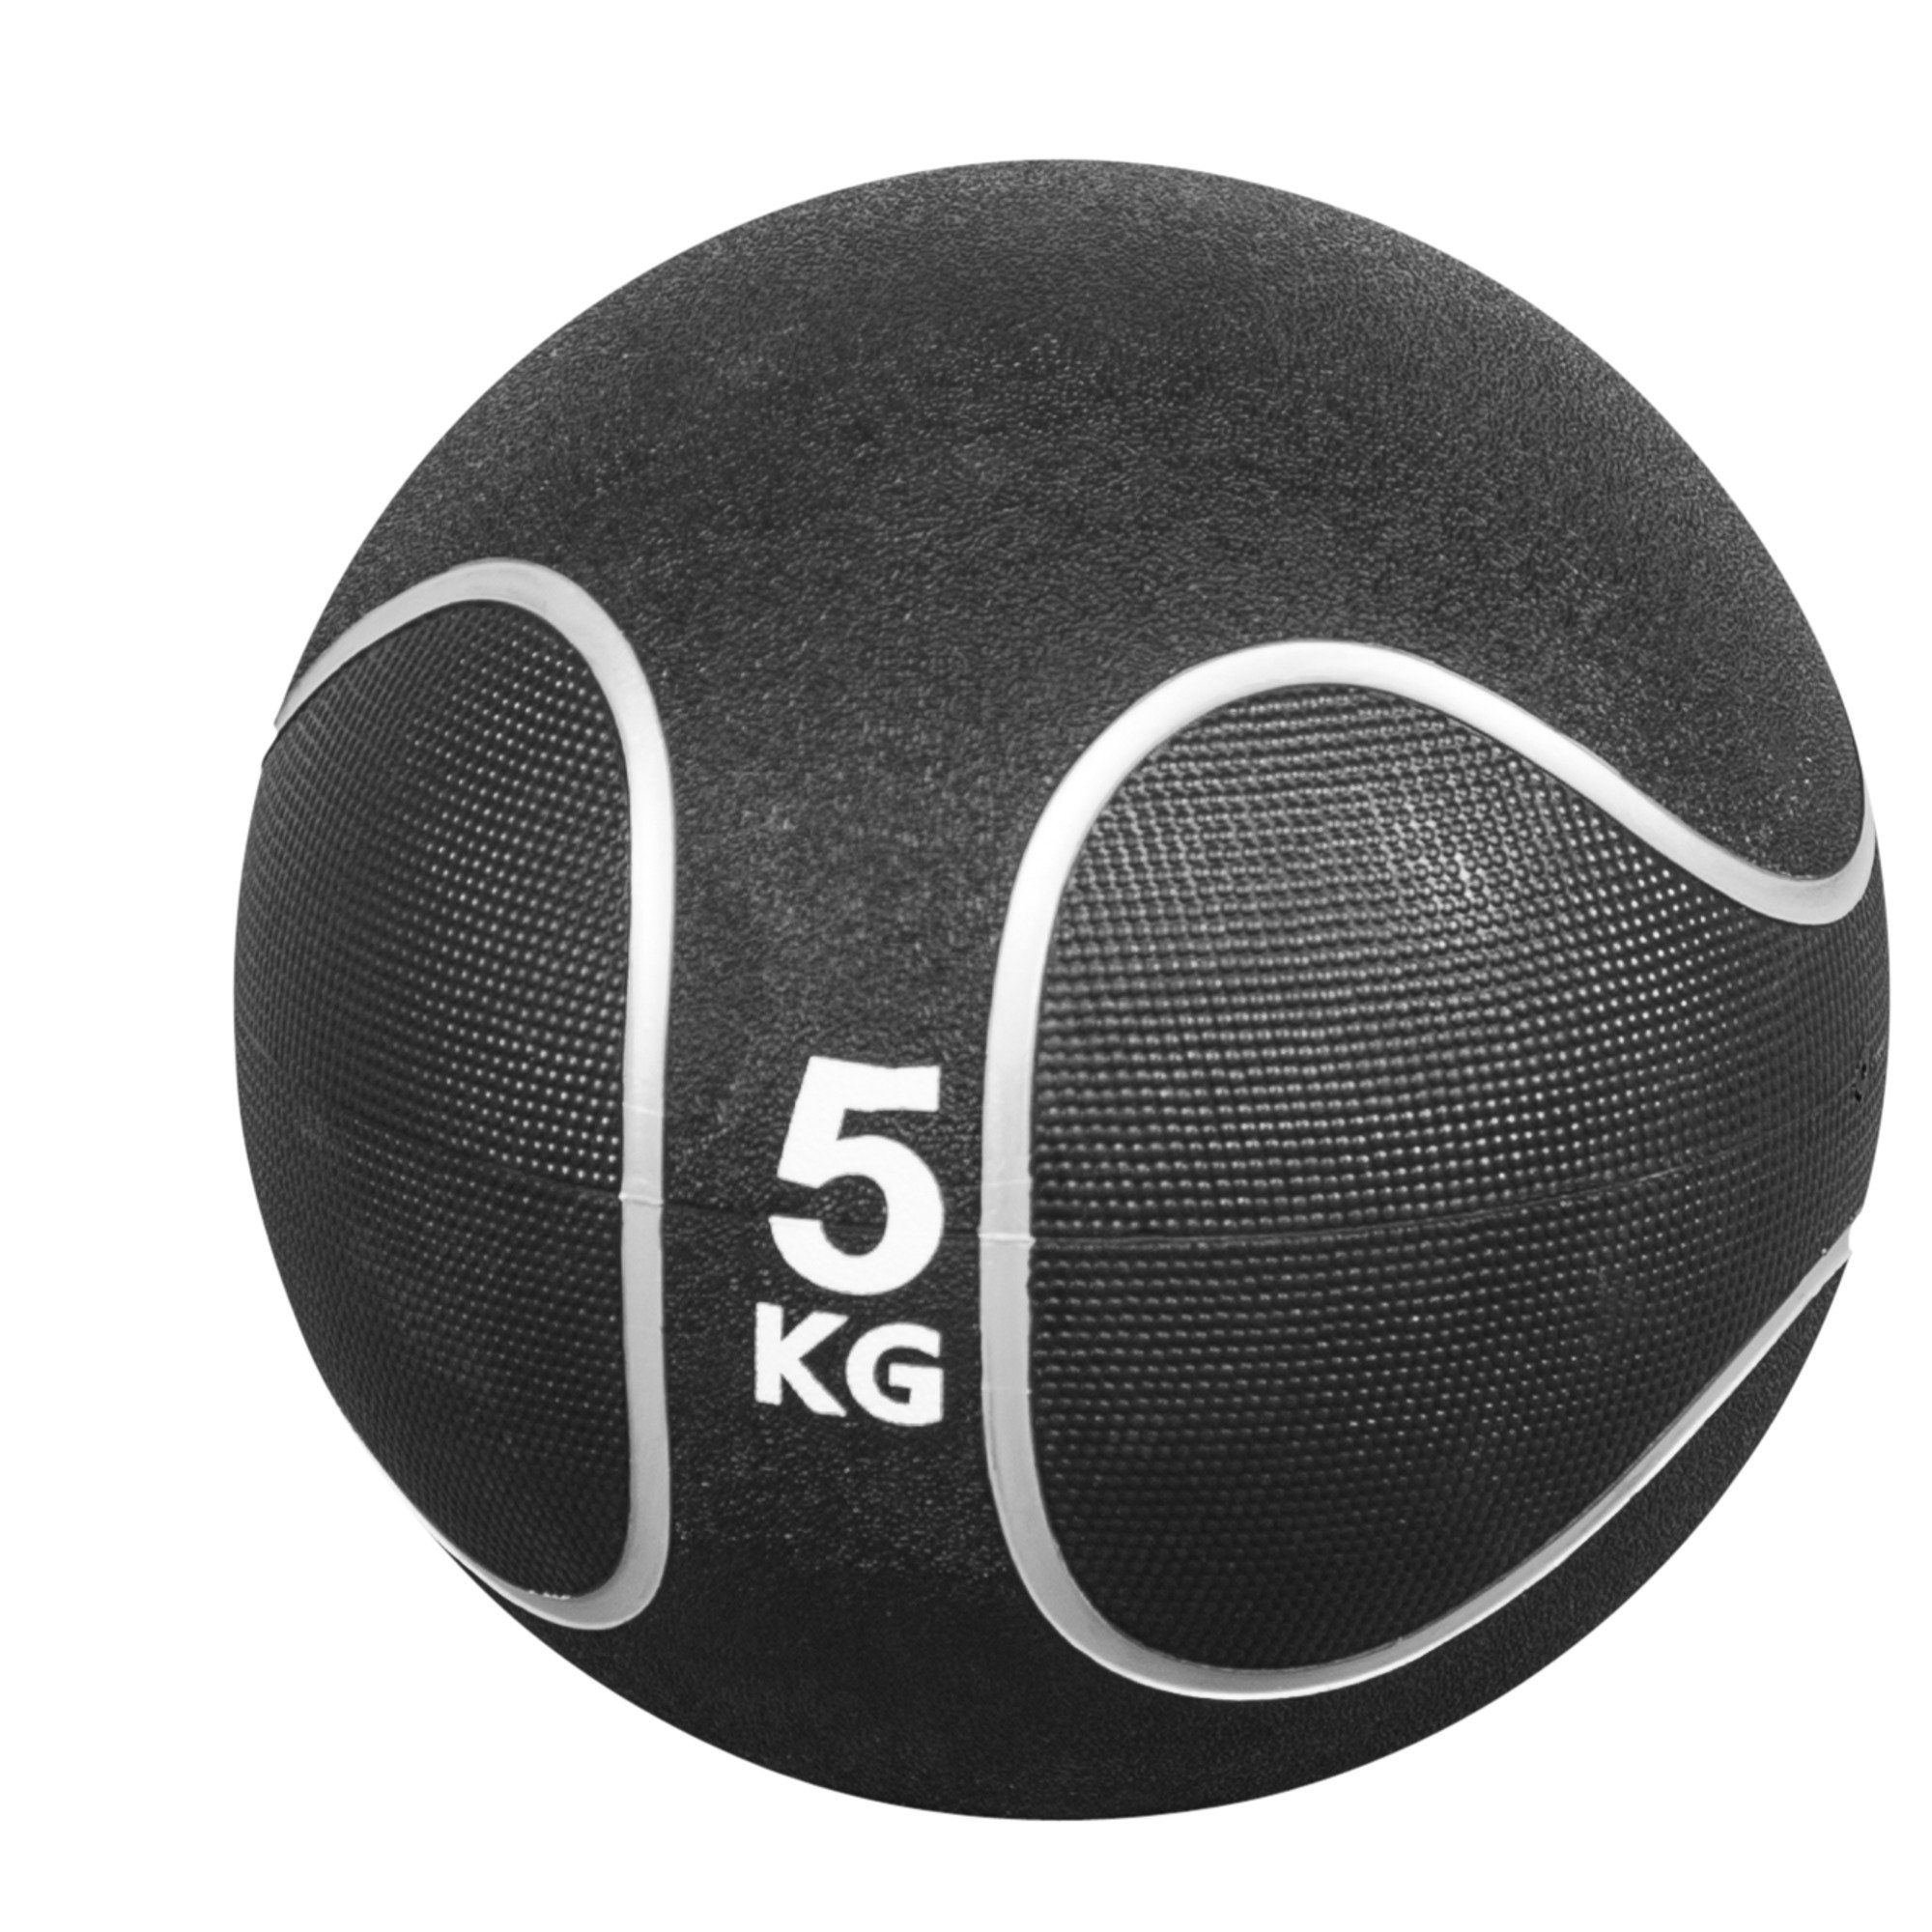 23 Gummi, 5 SPORTS cm, Einzeln KG oder Ø aus / Set, GORILLA Fitnessball rutschfest, 29 Medizinball